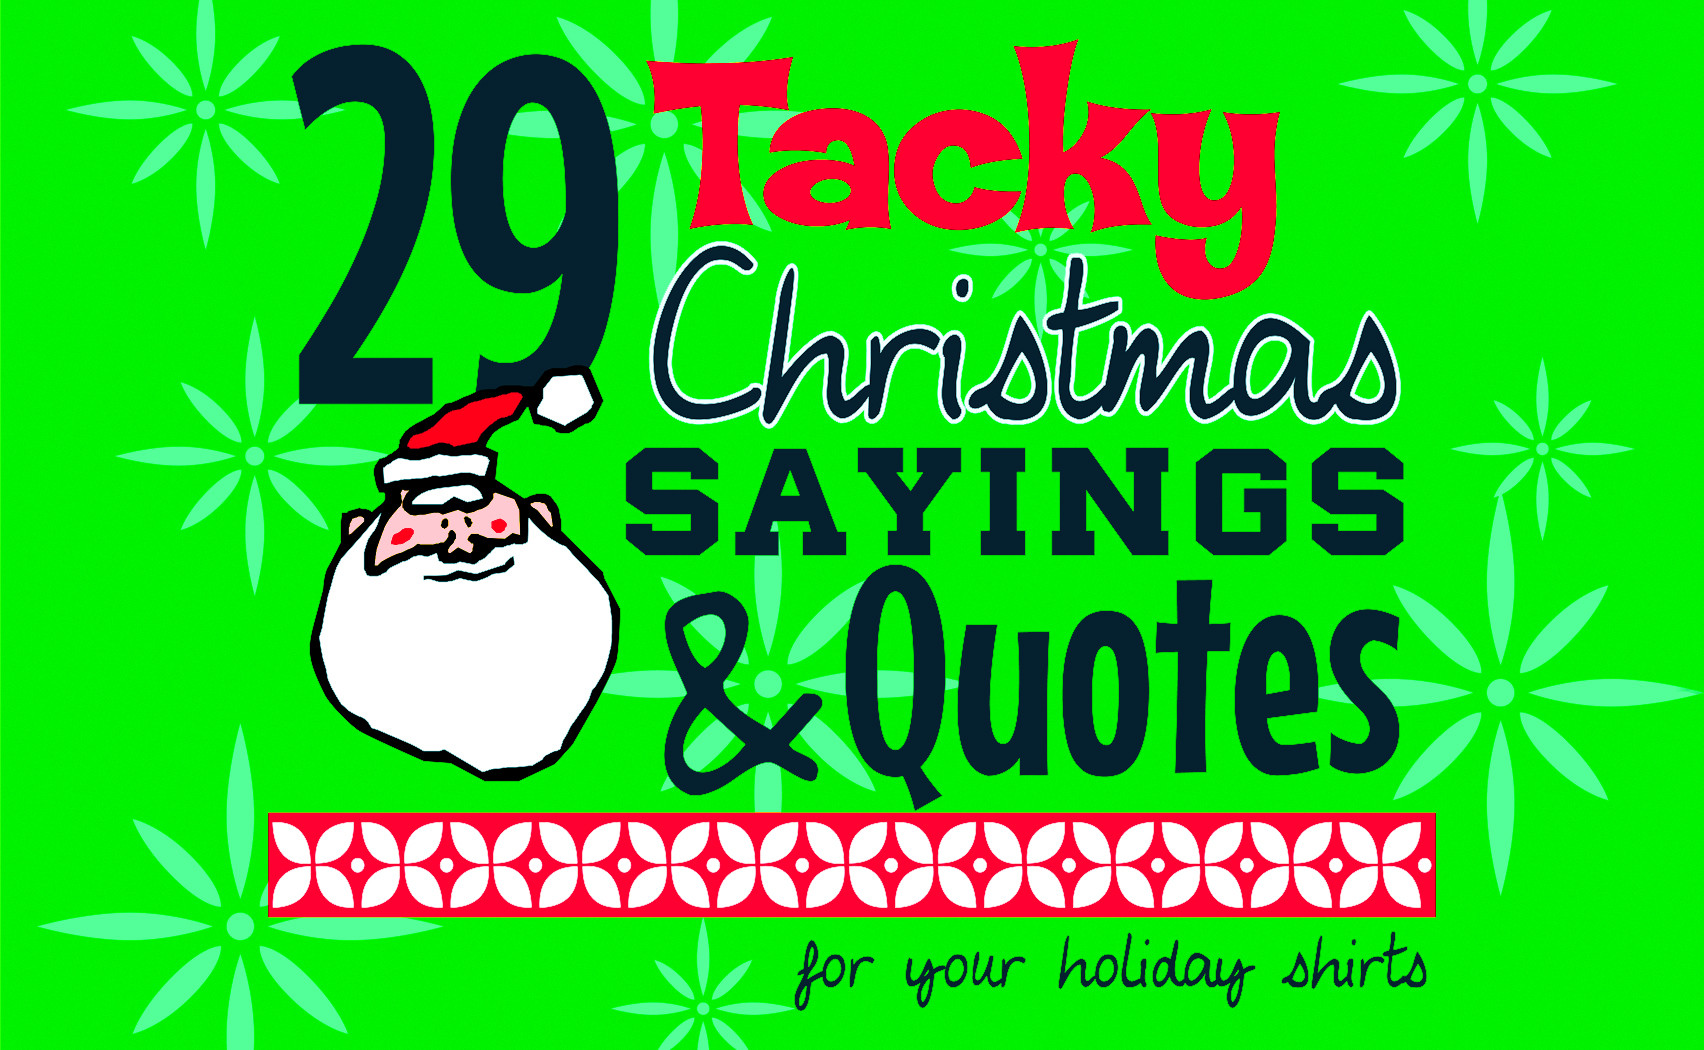 Christmas Quotes And Sayings
 IZA Design Blog Tacky Christmas Sayings and Quotes